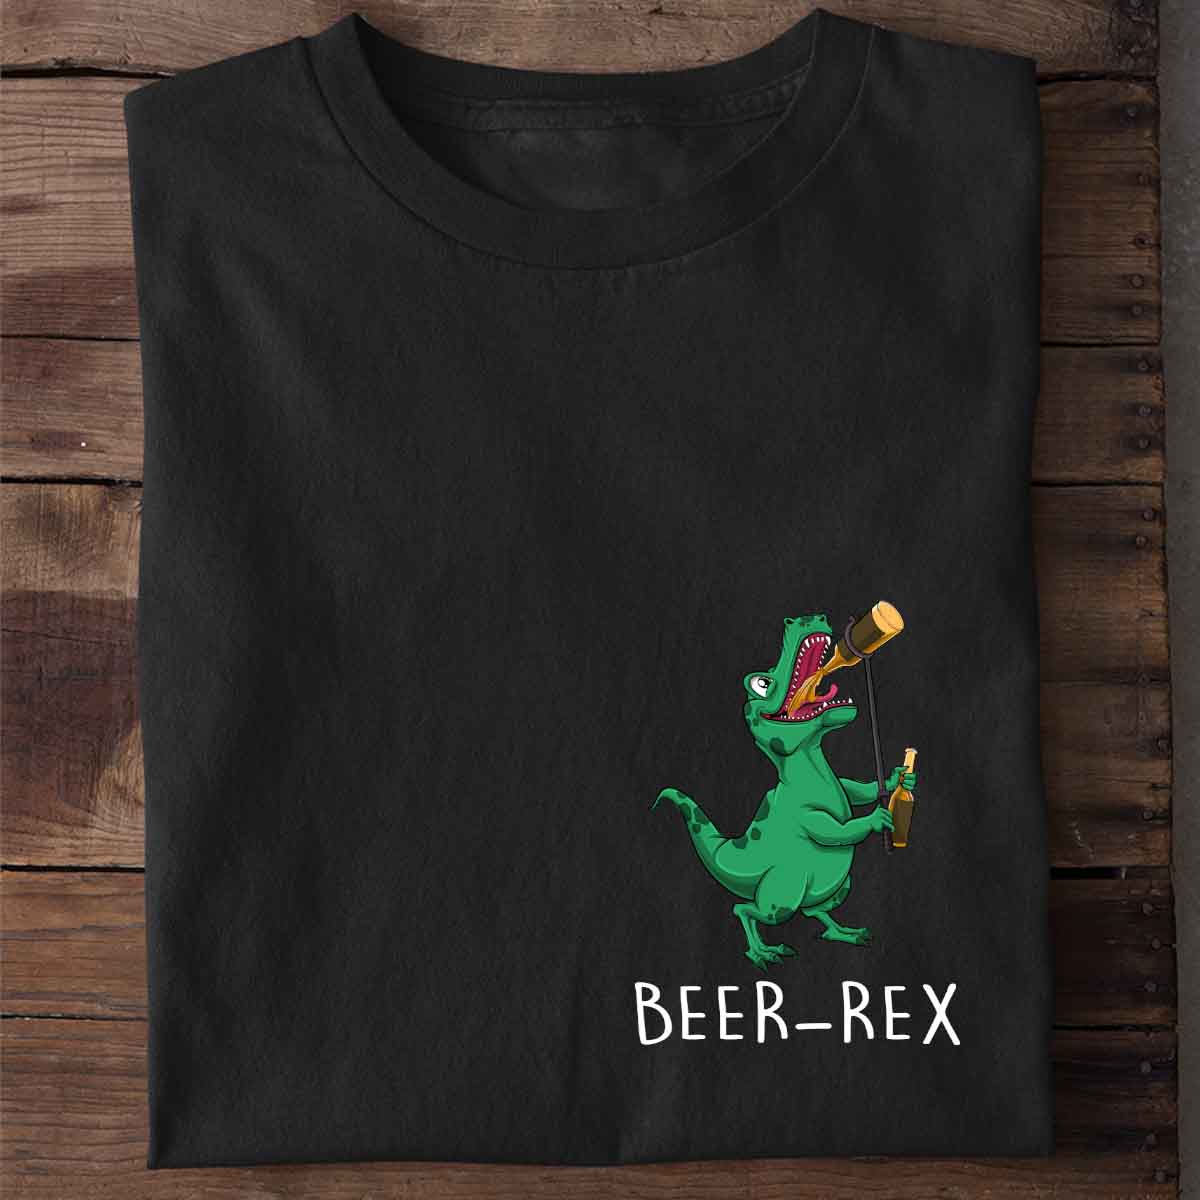 Beer-Rex T-Rex - Shirt Unisex Chest